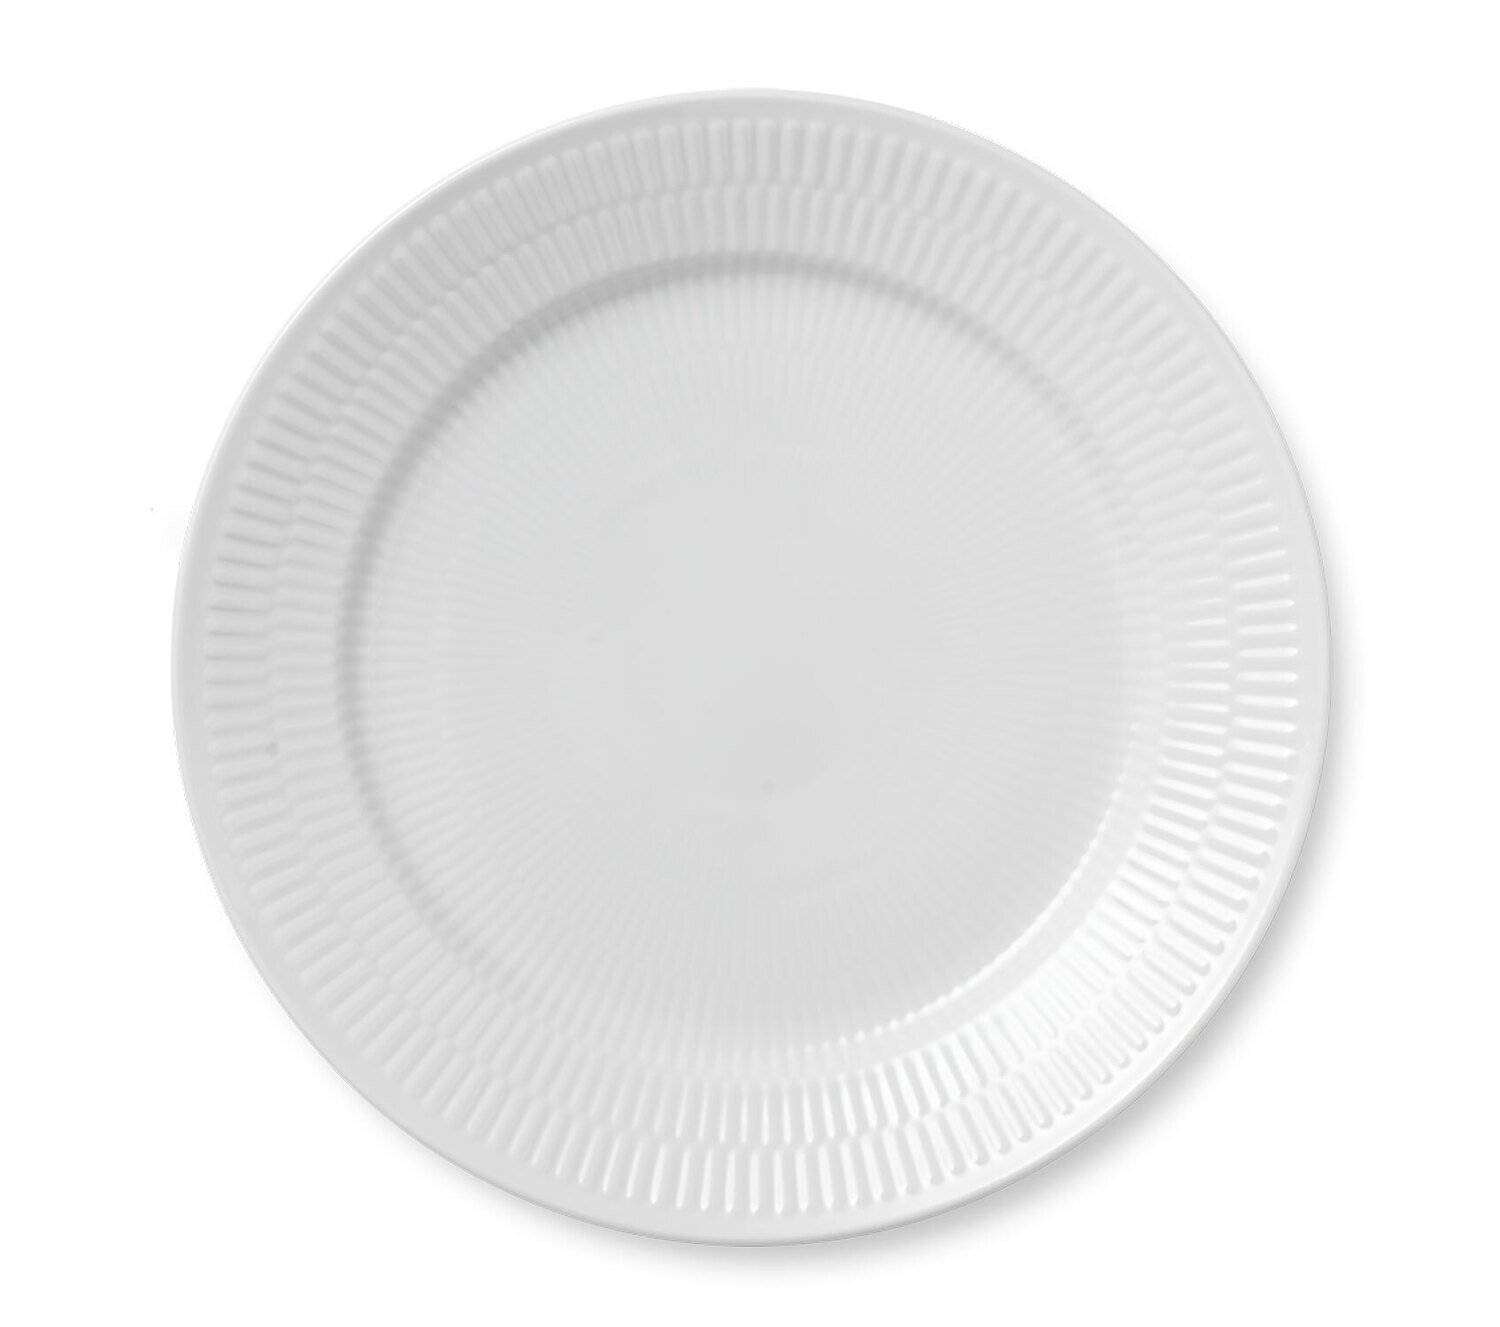 Royal Copenhagen White Fluted Dinner Plate 10.75 Inch 1017404